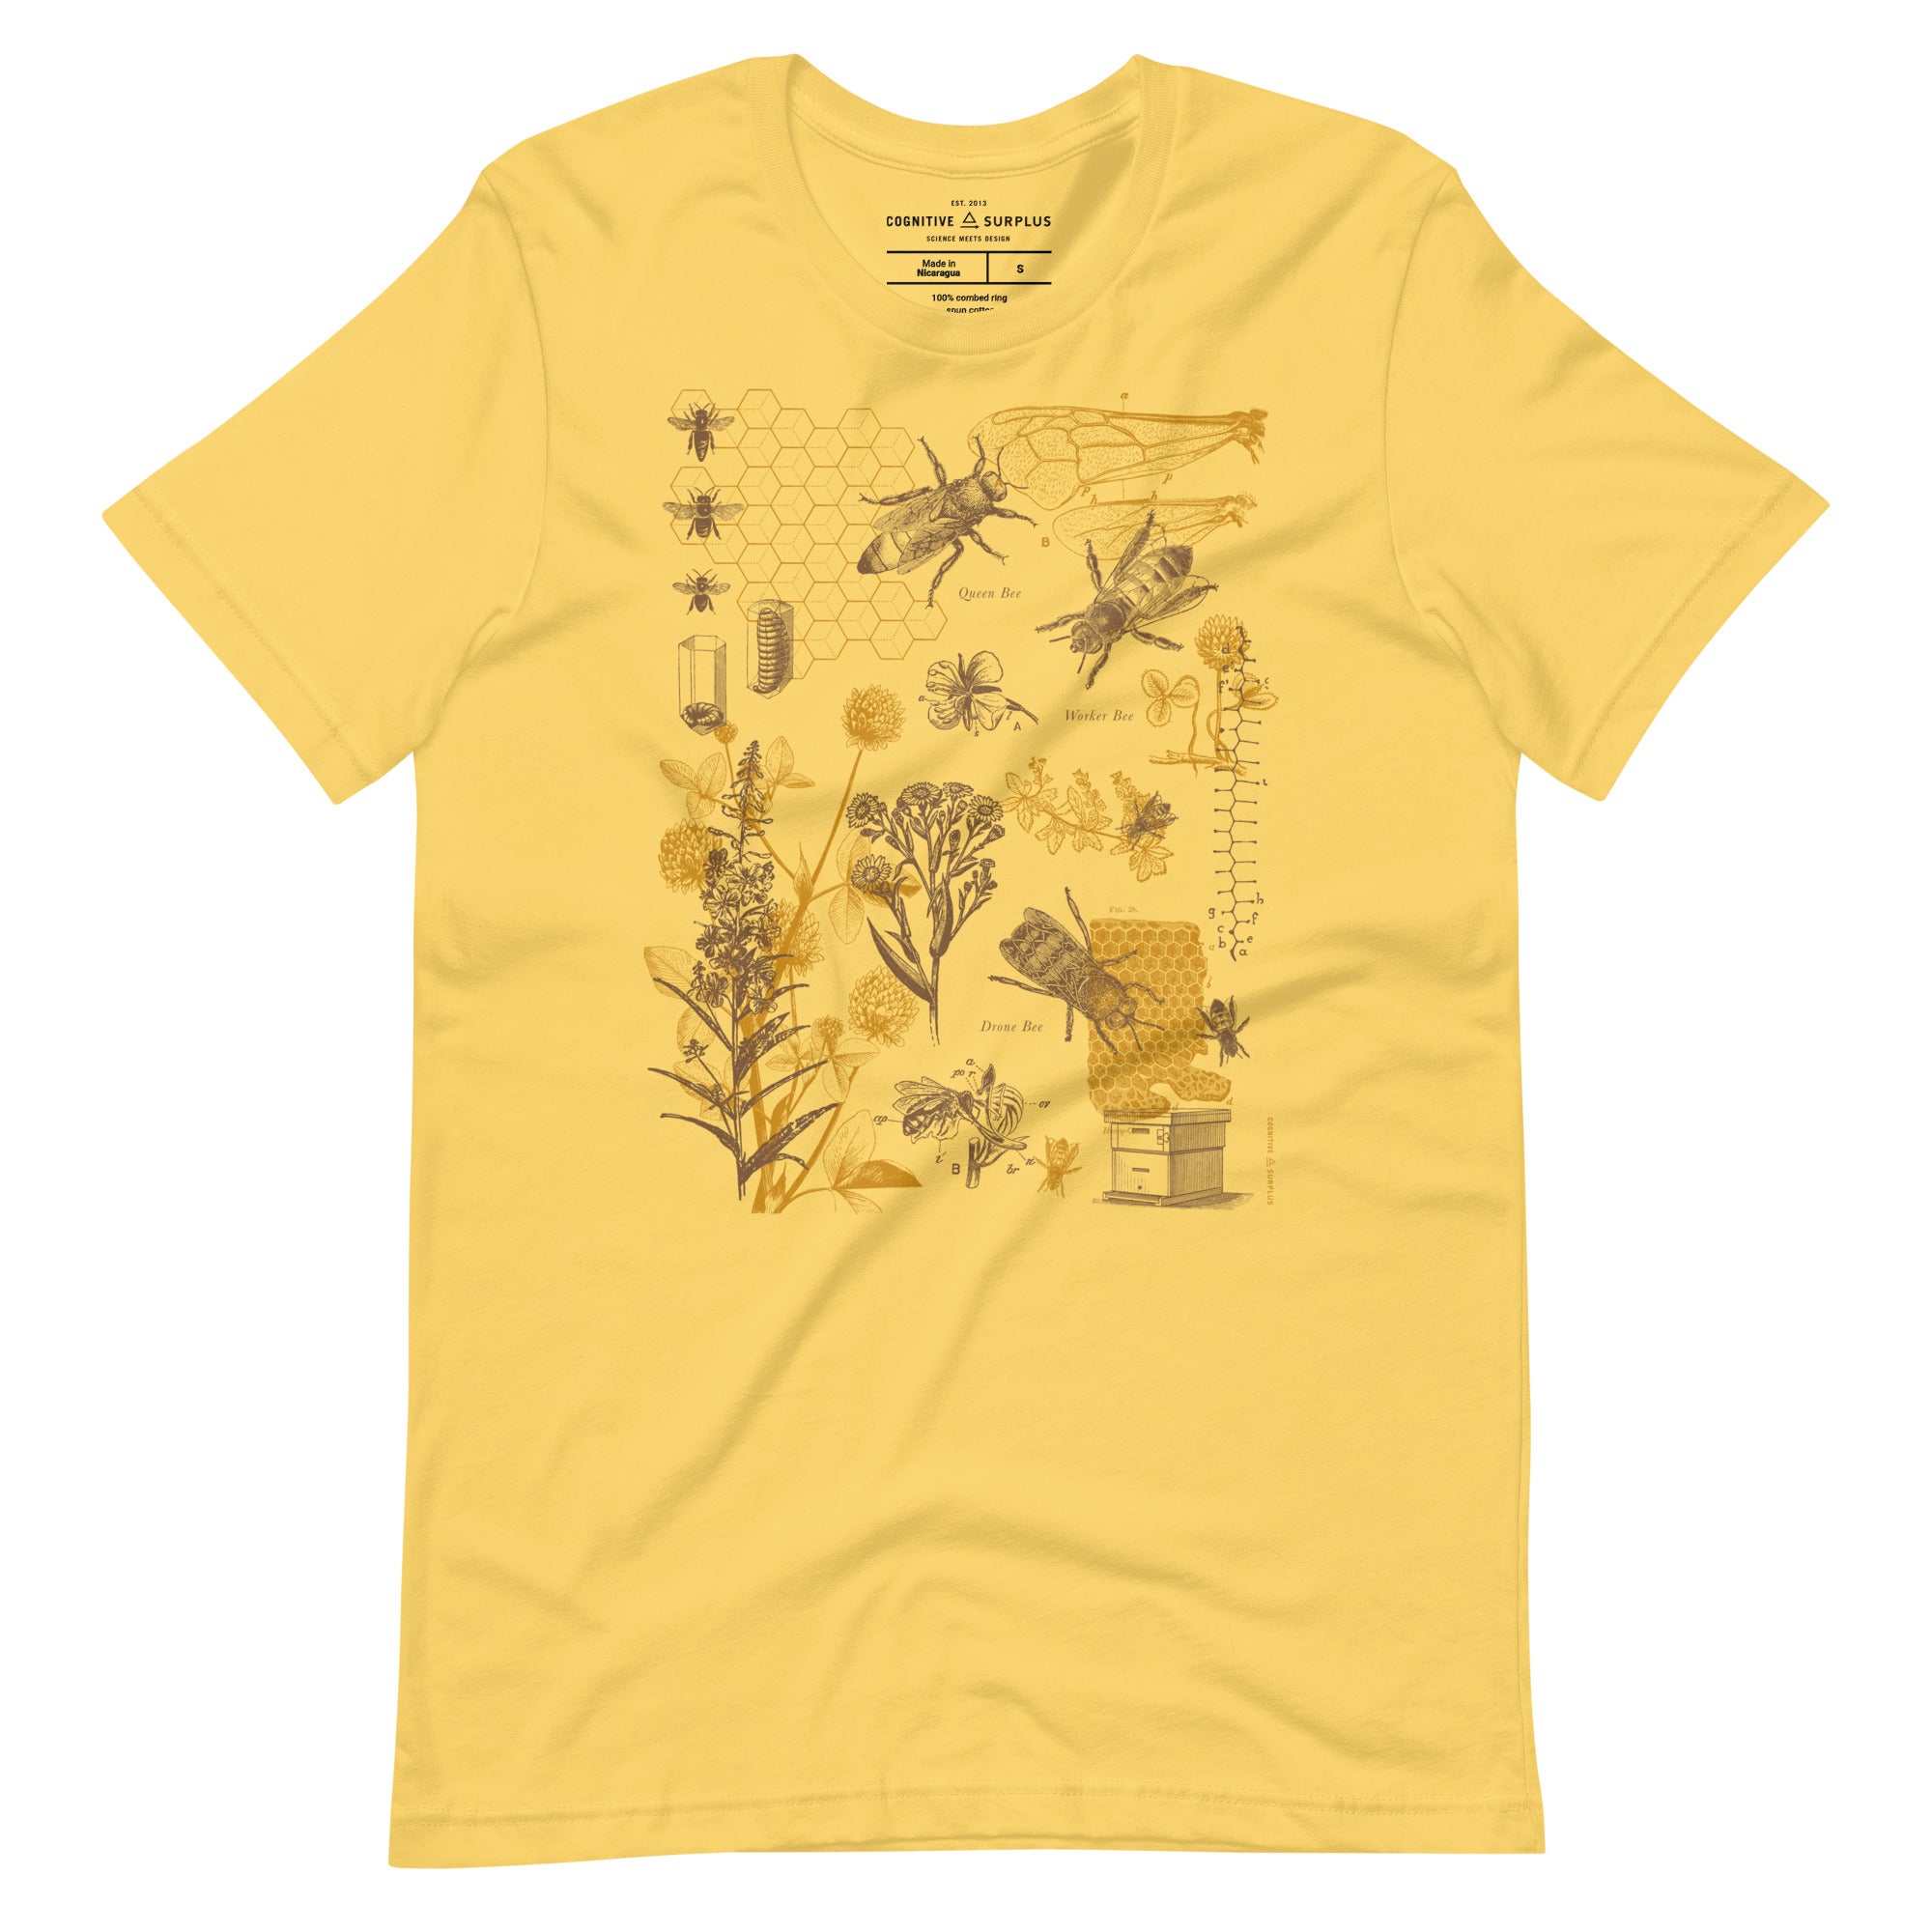 unisex-staple-t-shirt-yellow-front-664f6c99365b1.jpg